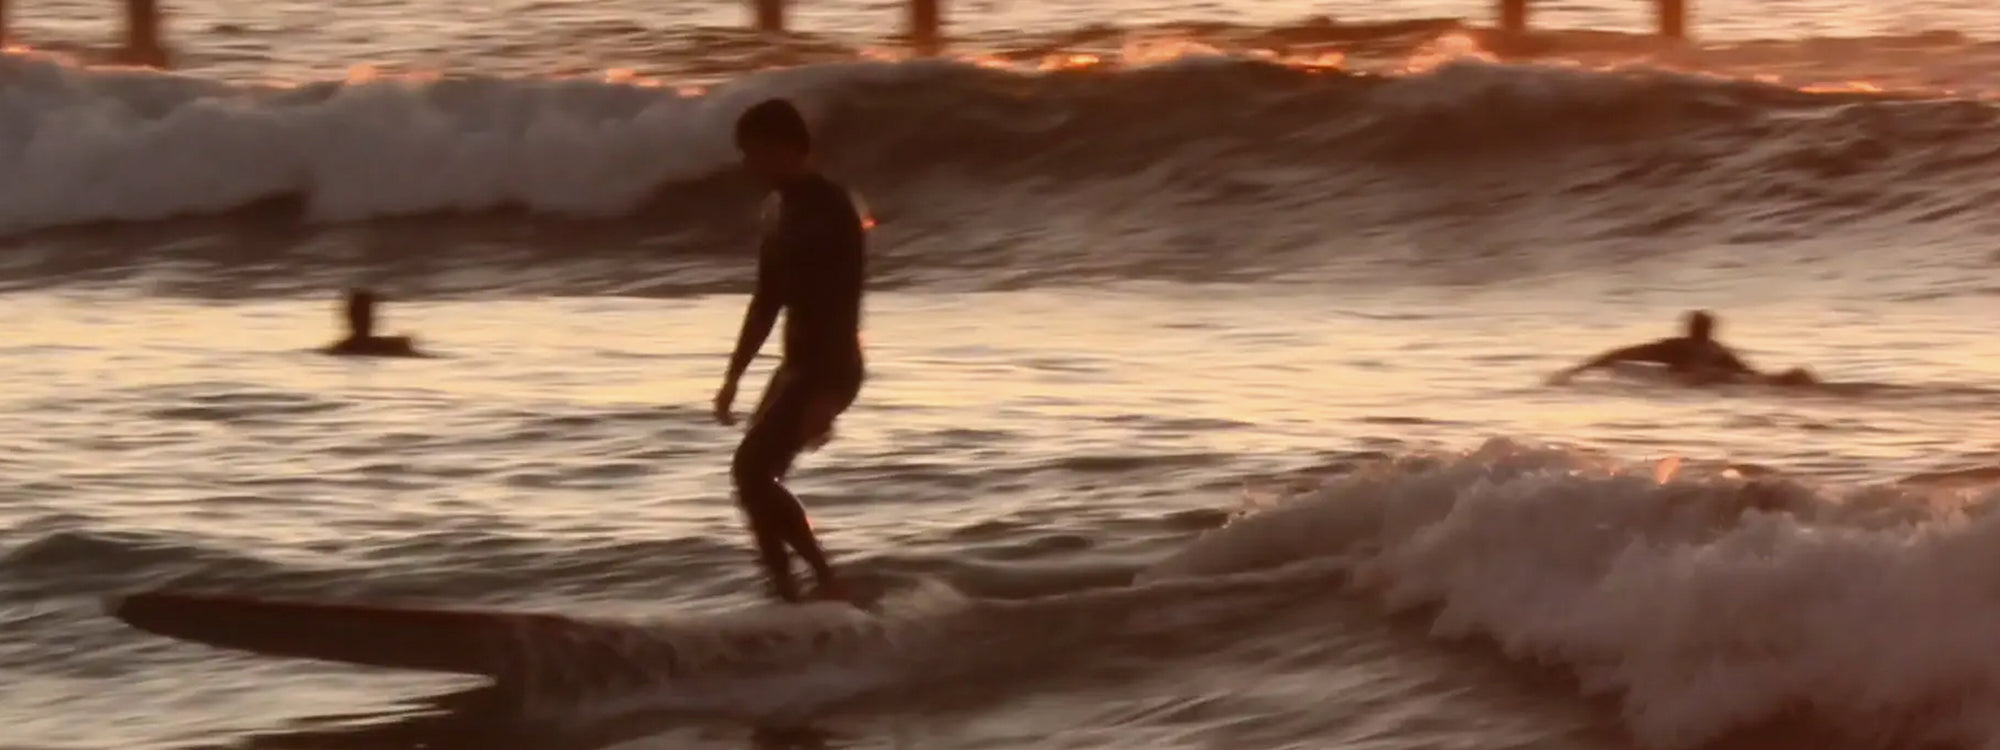 Will Allen Surfs San Diego by Cameron Nelligan